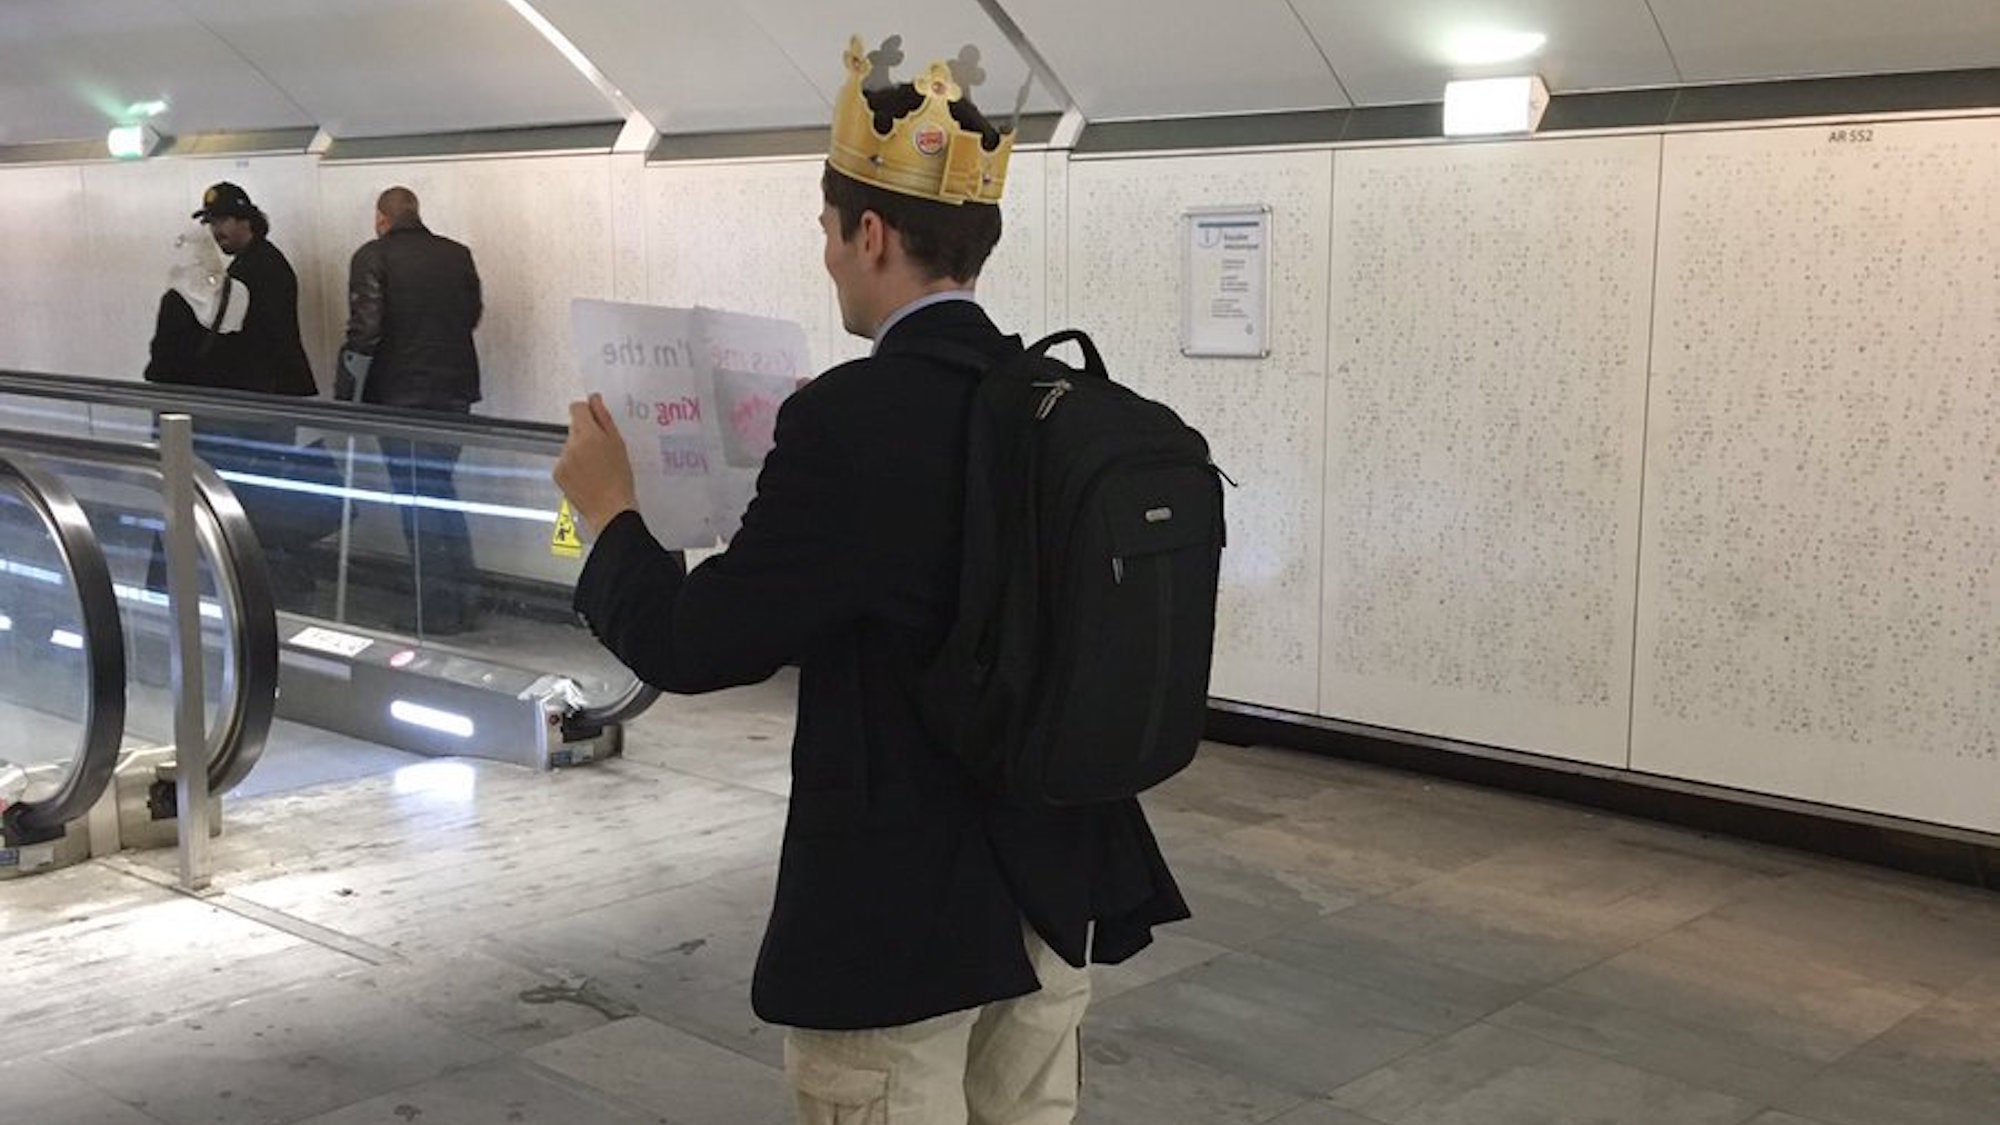 Le harceleur à la couronne est de retour dans le métro parisien